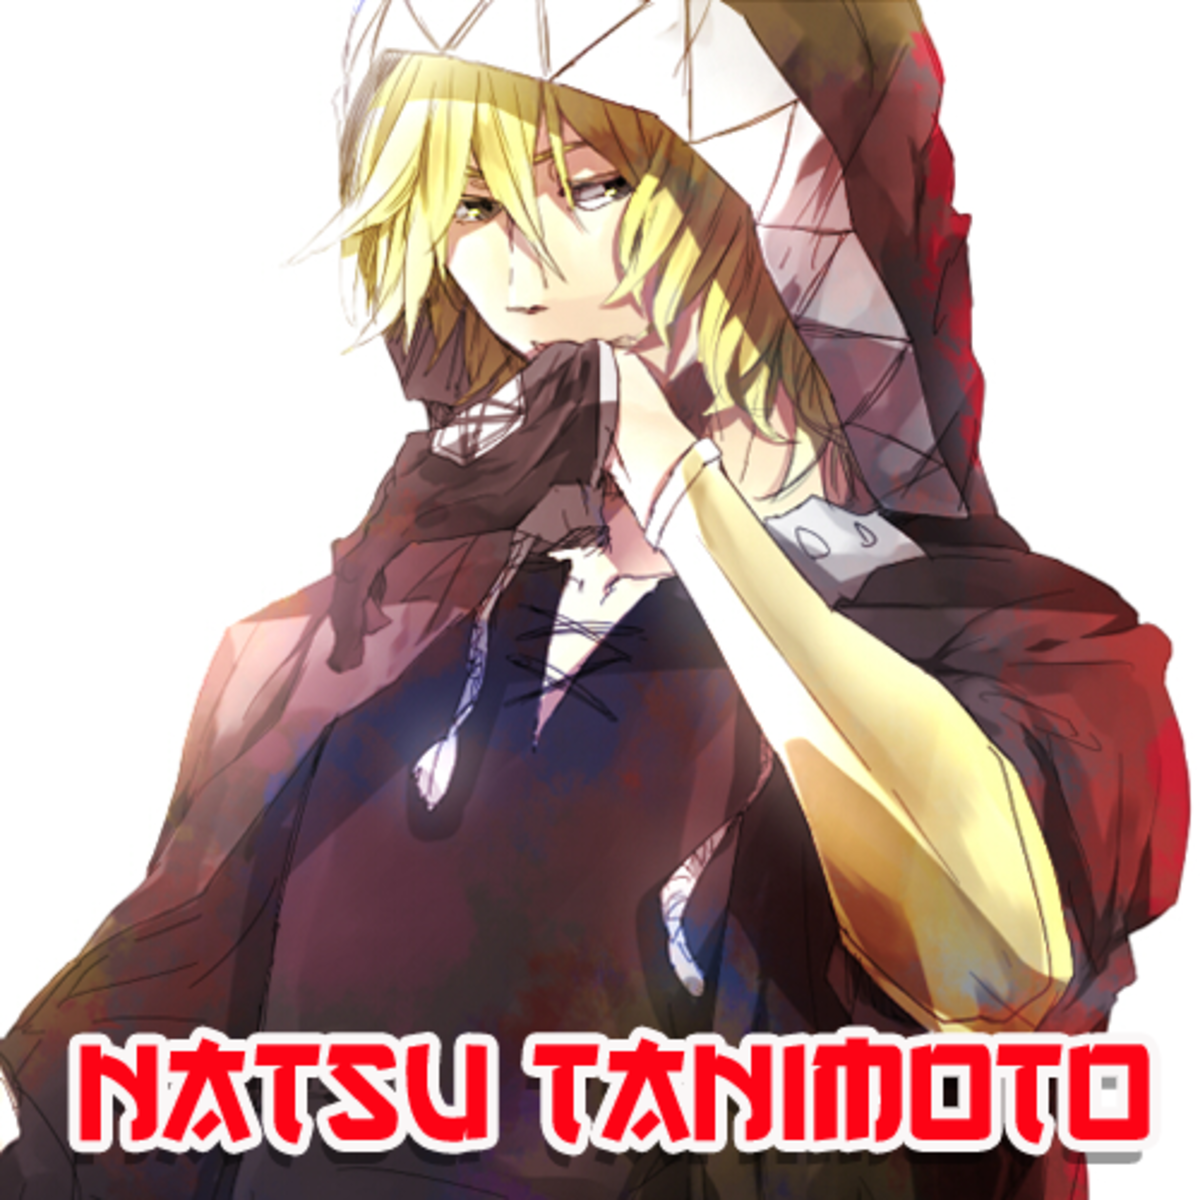 Natsu Tanimoto